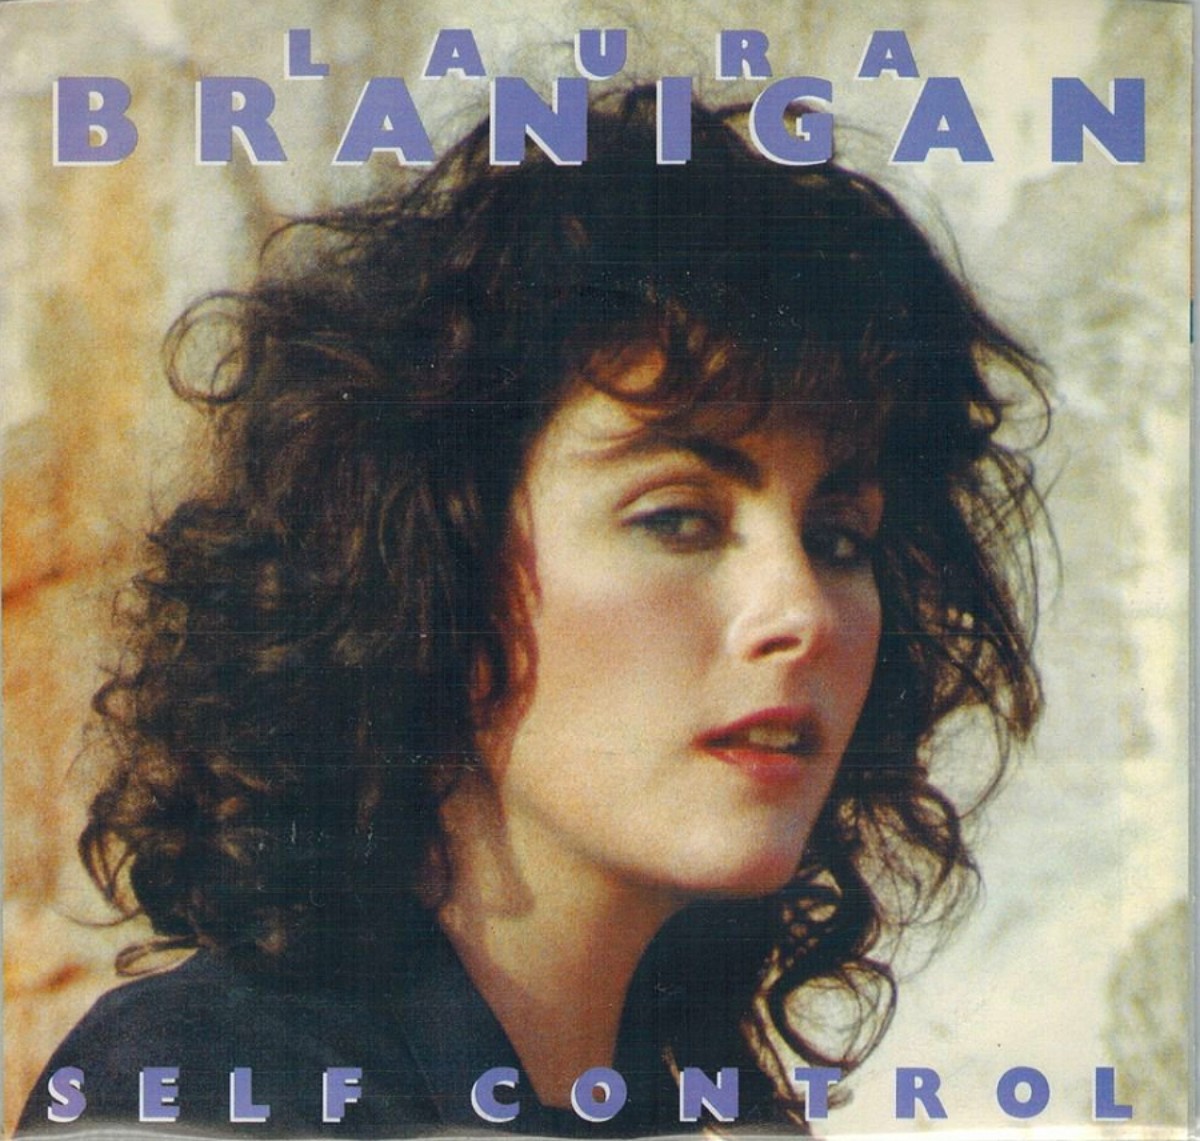 Laura Brannigan, album Self Control